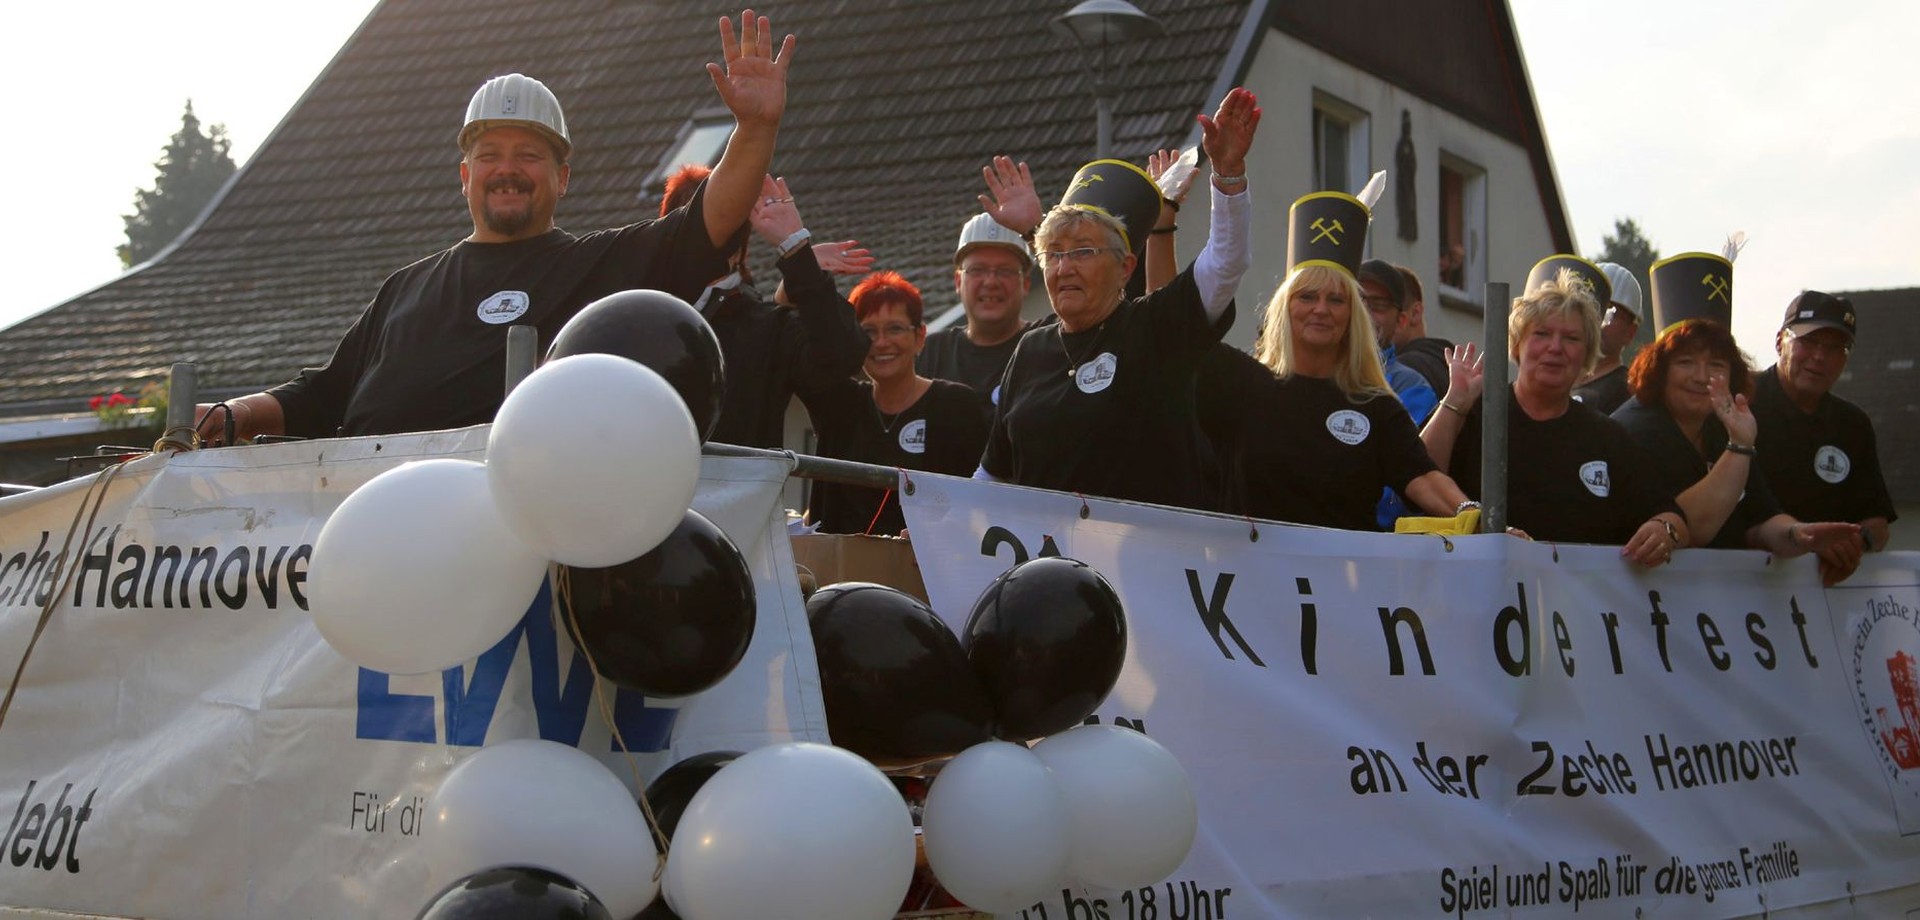 Mitglieder des Fördervereins winken auf einem offenen Wagen mit Werbung für das Kinderfest auf der Zeche Hannover.